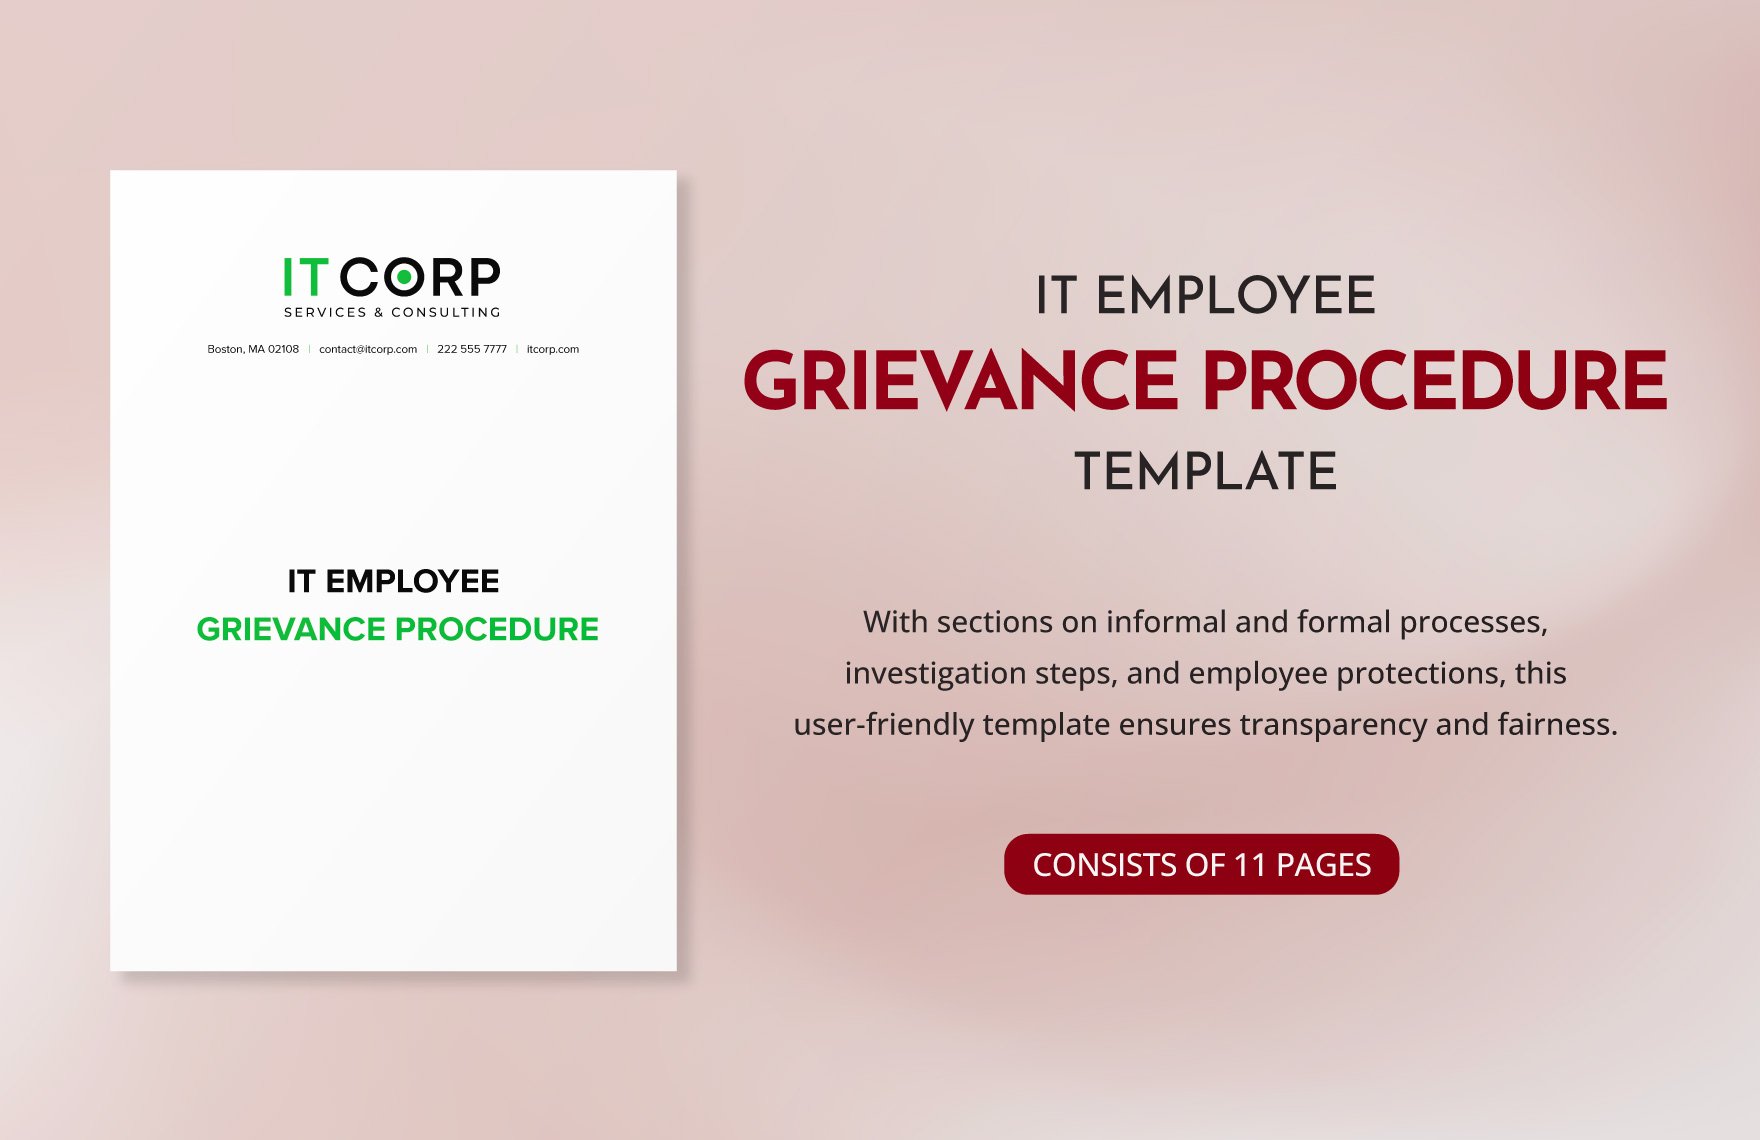 IT Employee Grievance Procedure Template